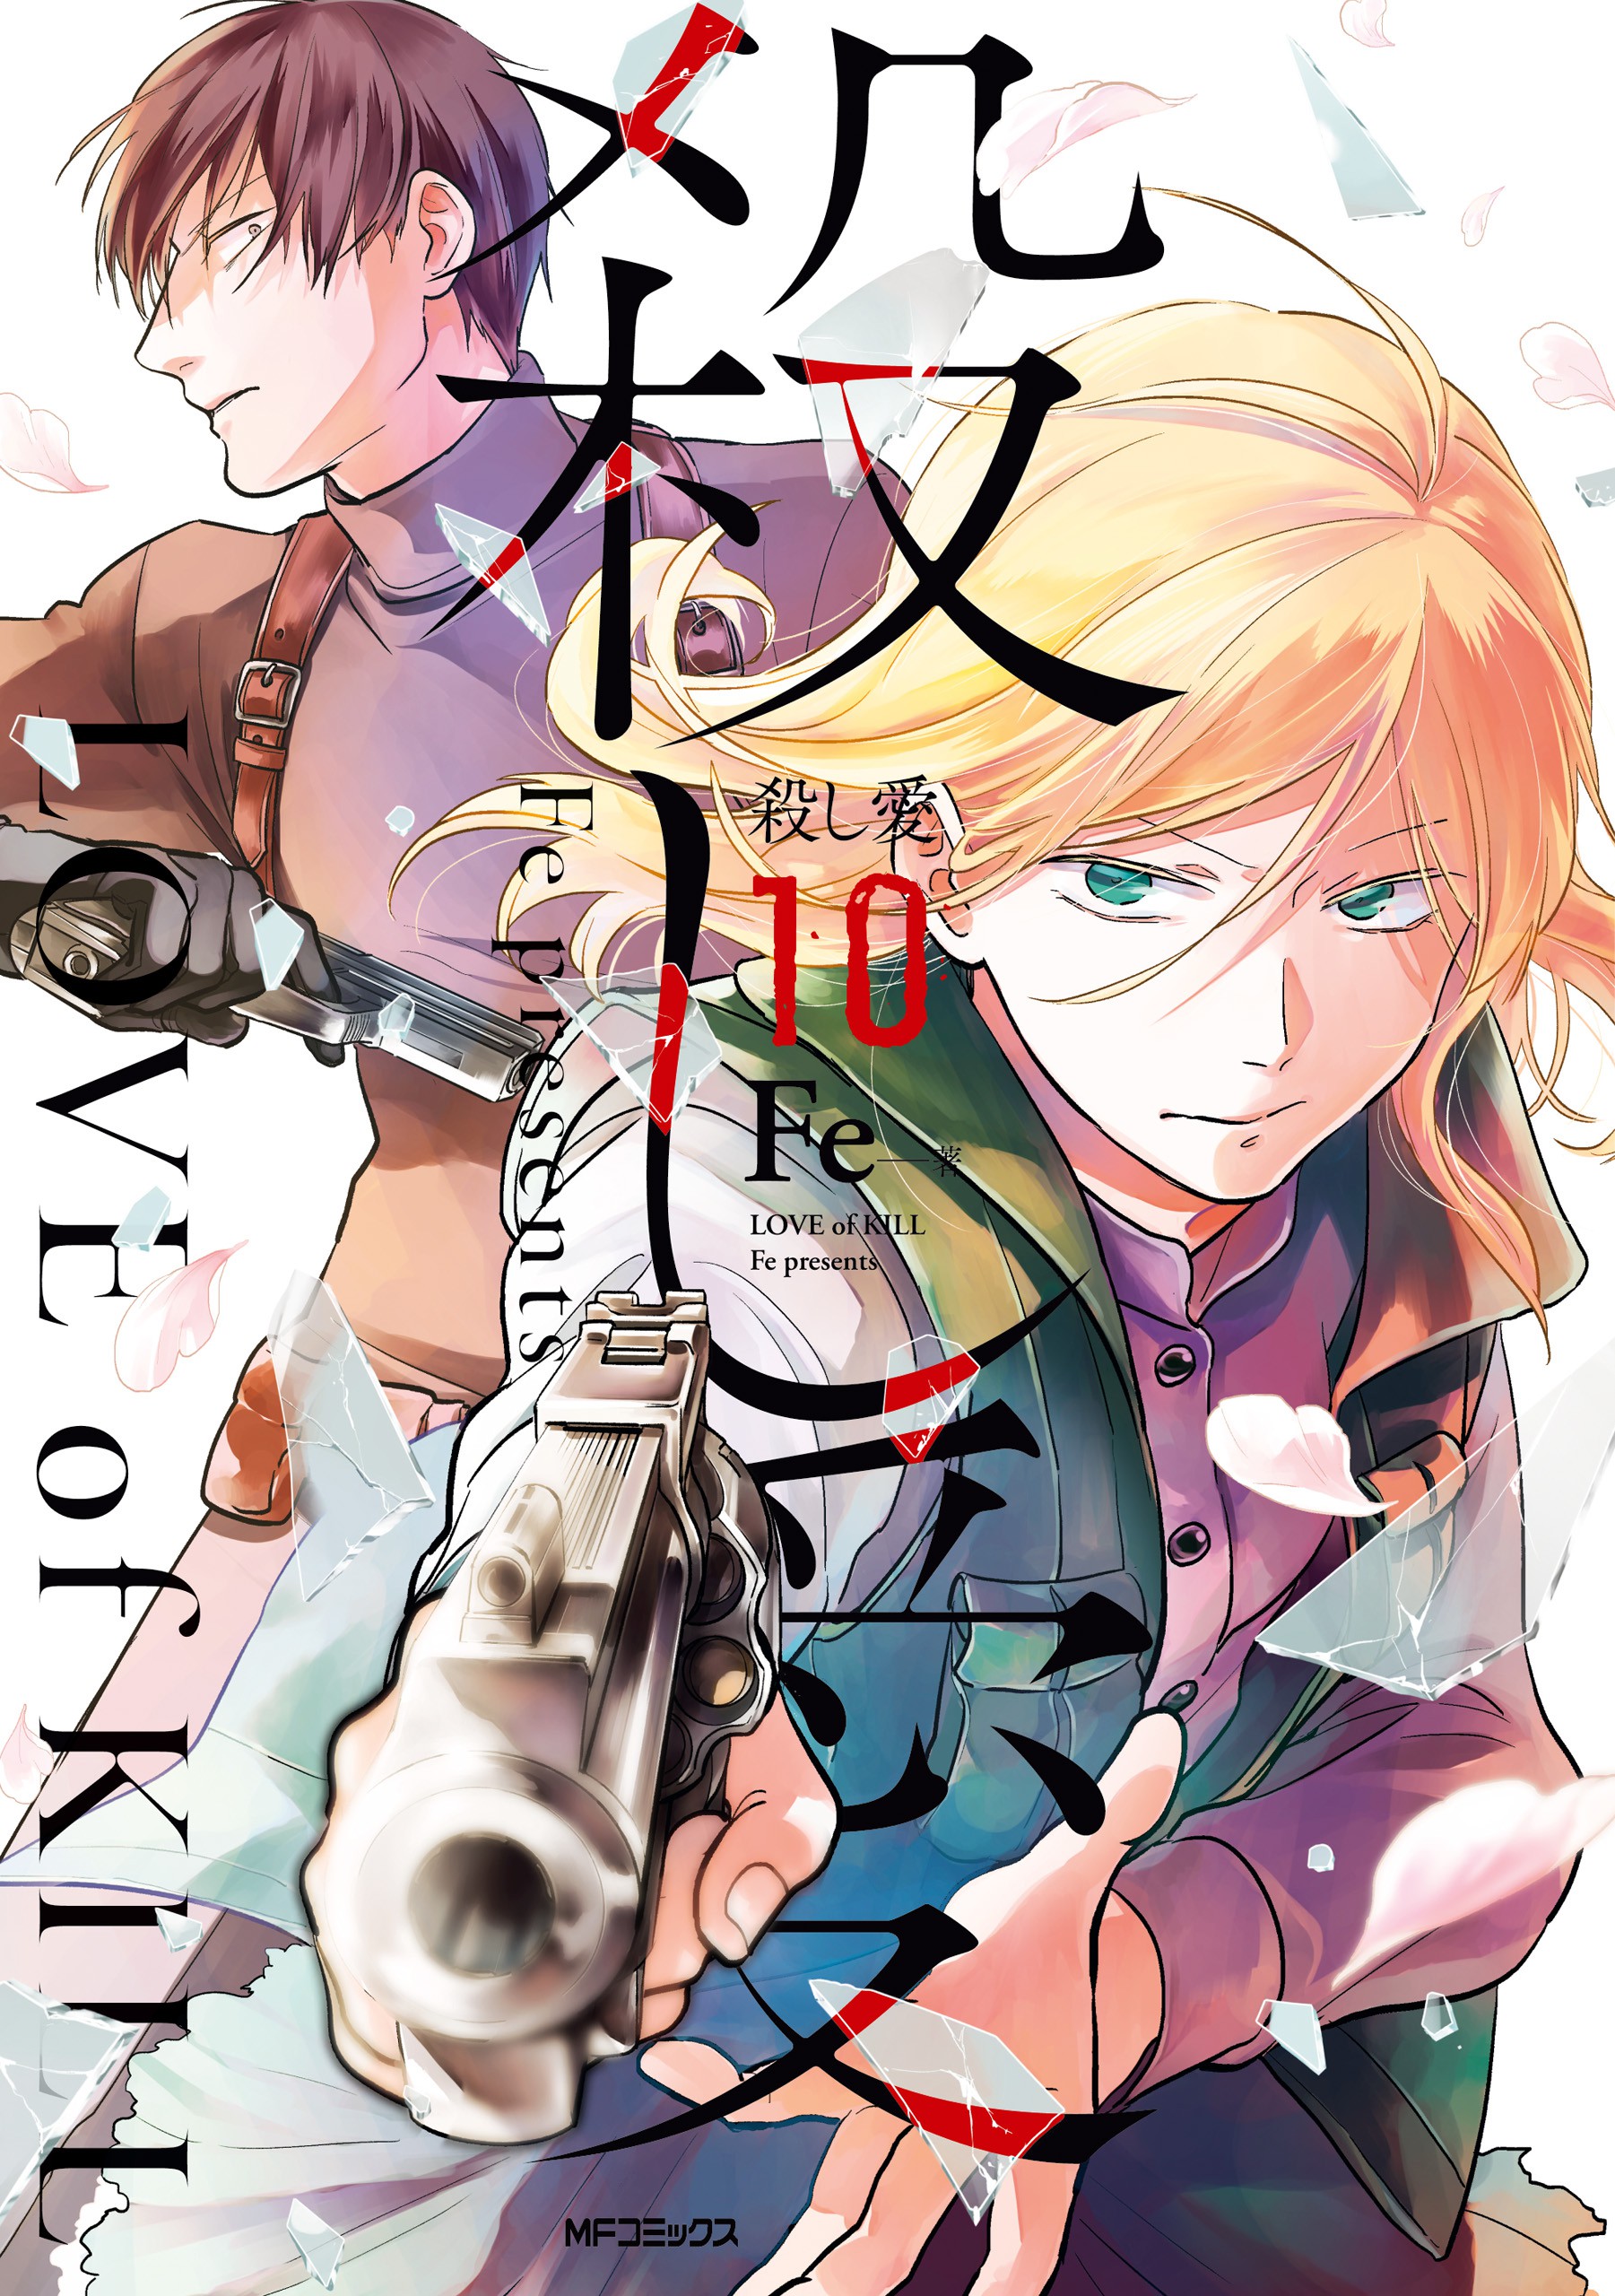 Love of Kill Volume 6 (Koroshi Ai) - Manga Store 